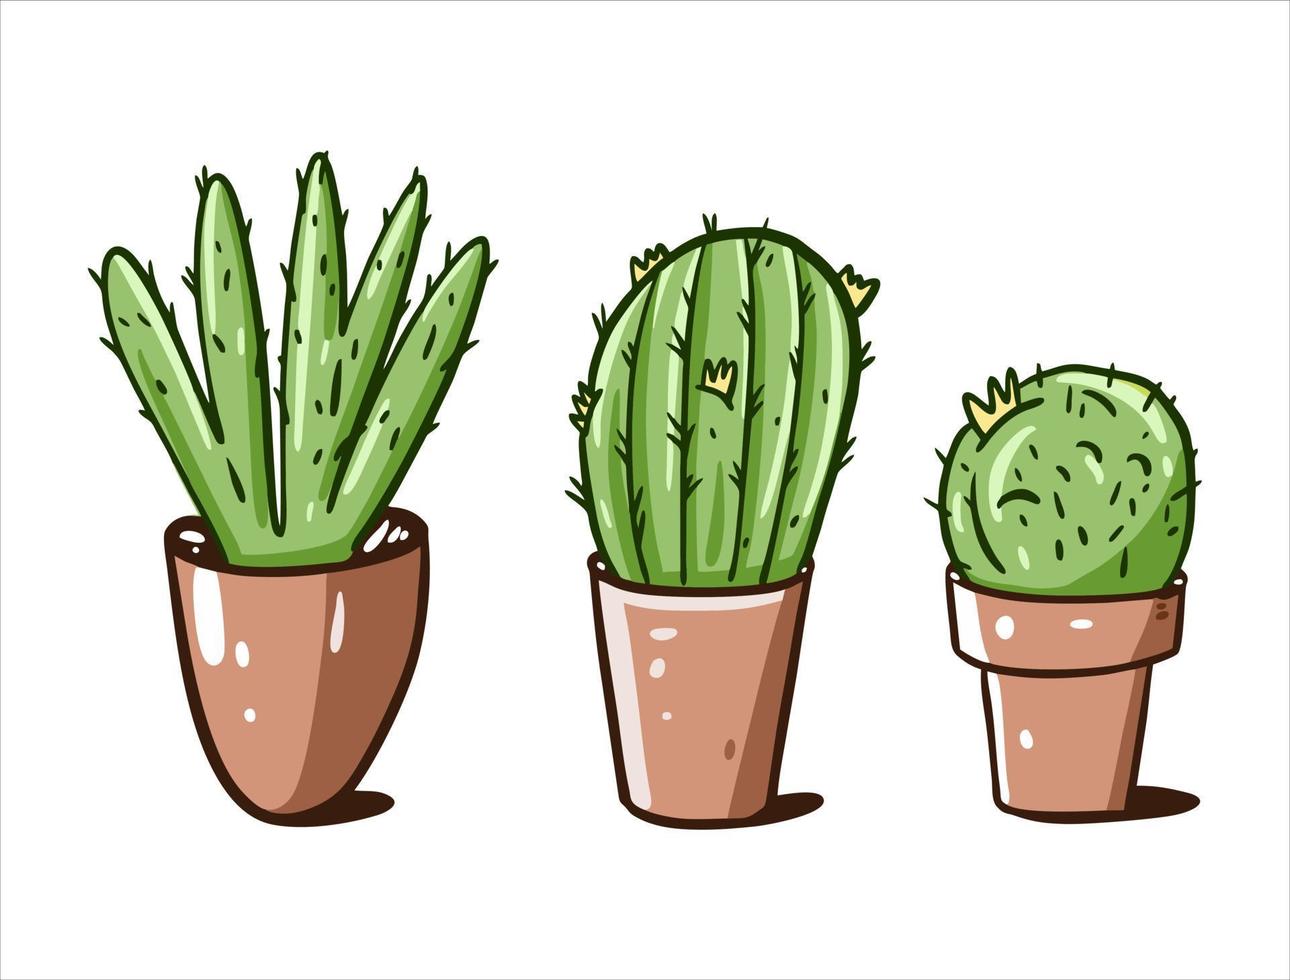 Grün Kaktus im braun Töpfe. Hand gezeichnet Vektor Illustration.